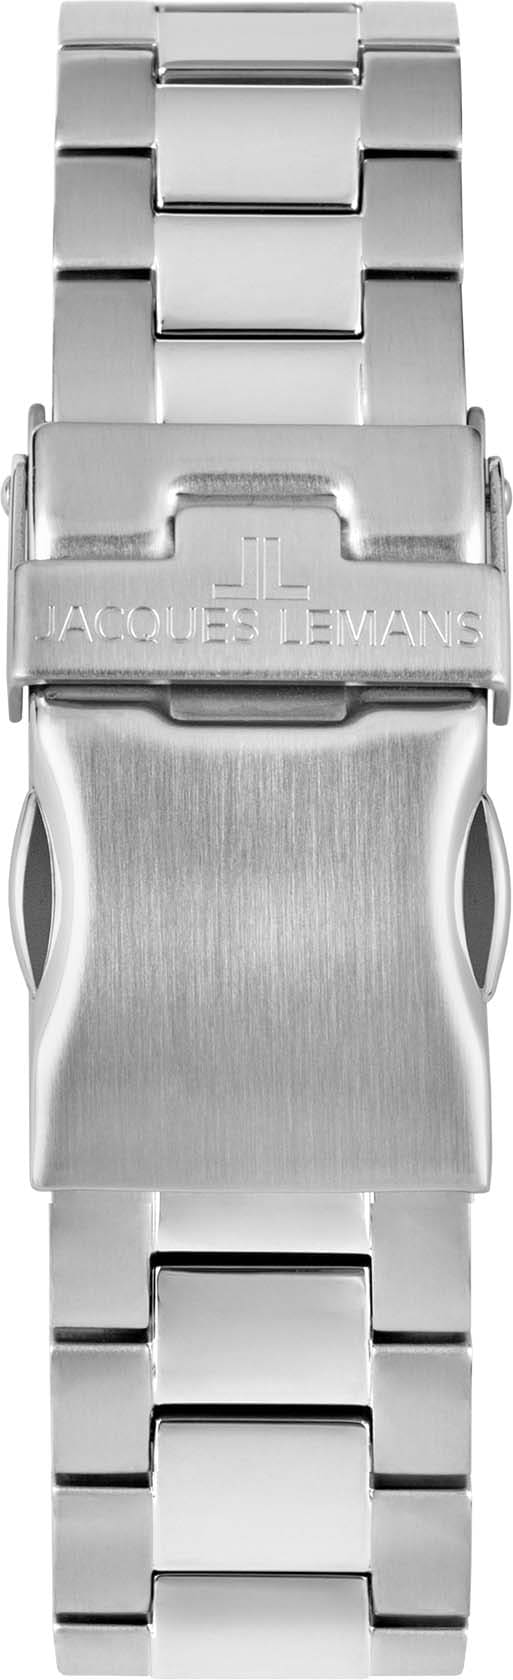 Jacques Lemans »42-11E« Multifunktionsuhr